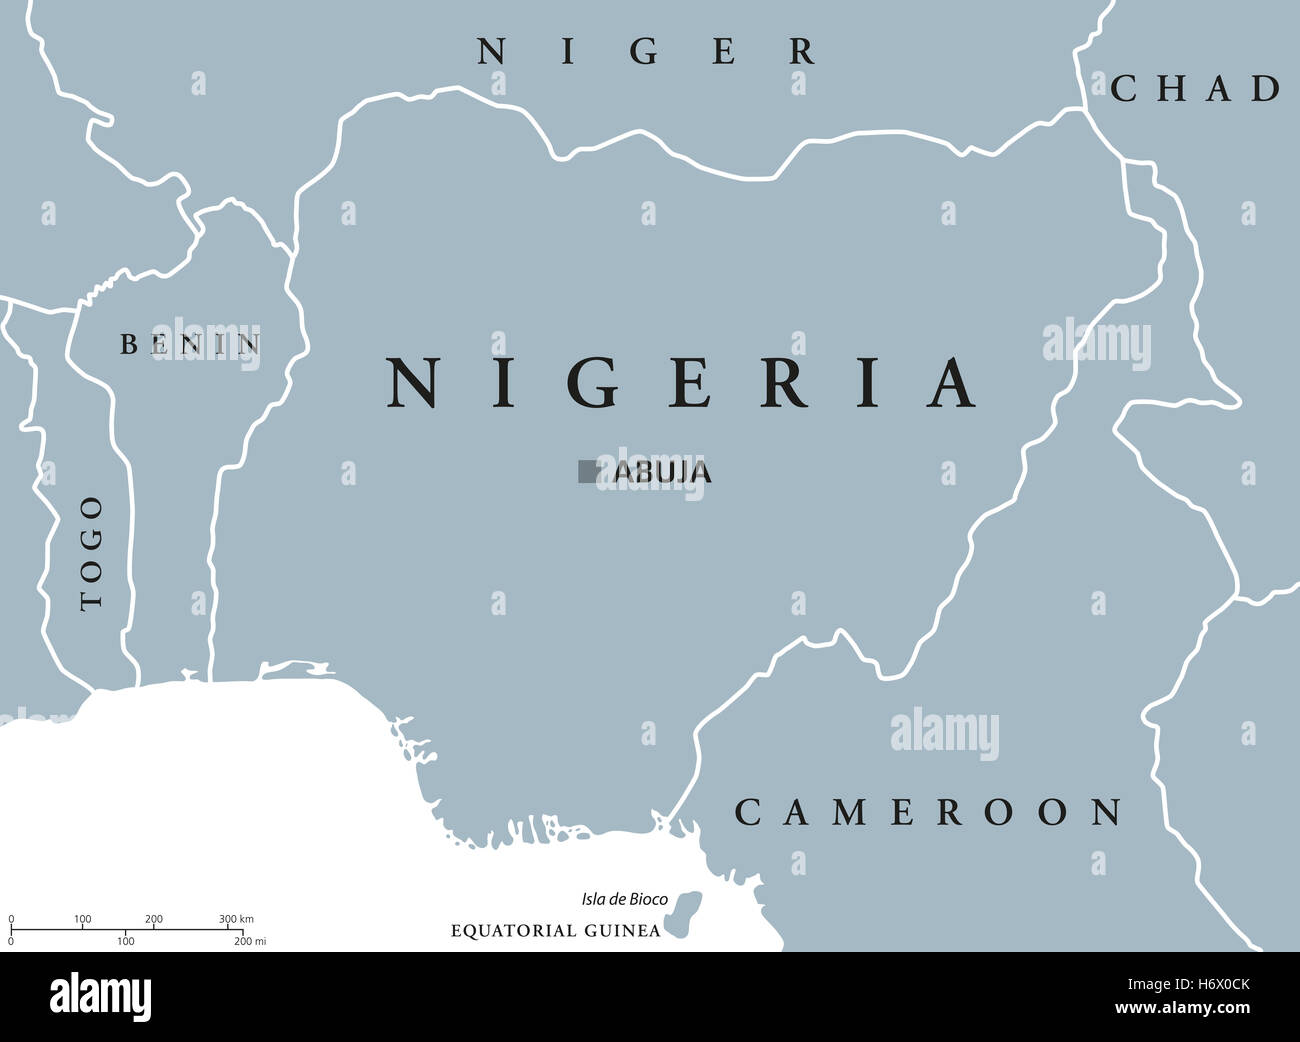 La Nigeria mappa politico con capitale Abuja, i confini nazionali e i paesi vicini. Illustrazione di colore grigio con etichetta inglese. Foto Stock